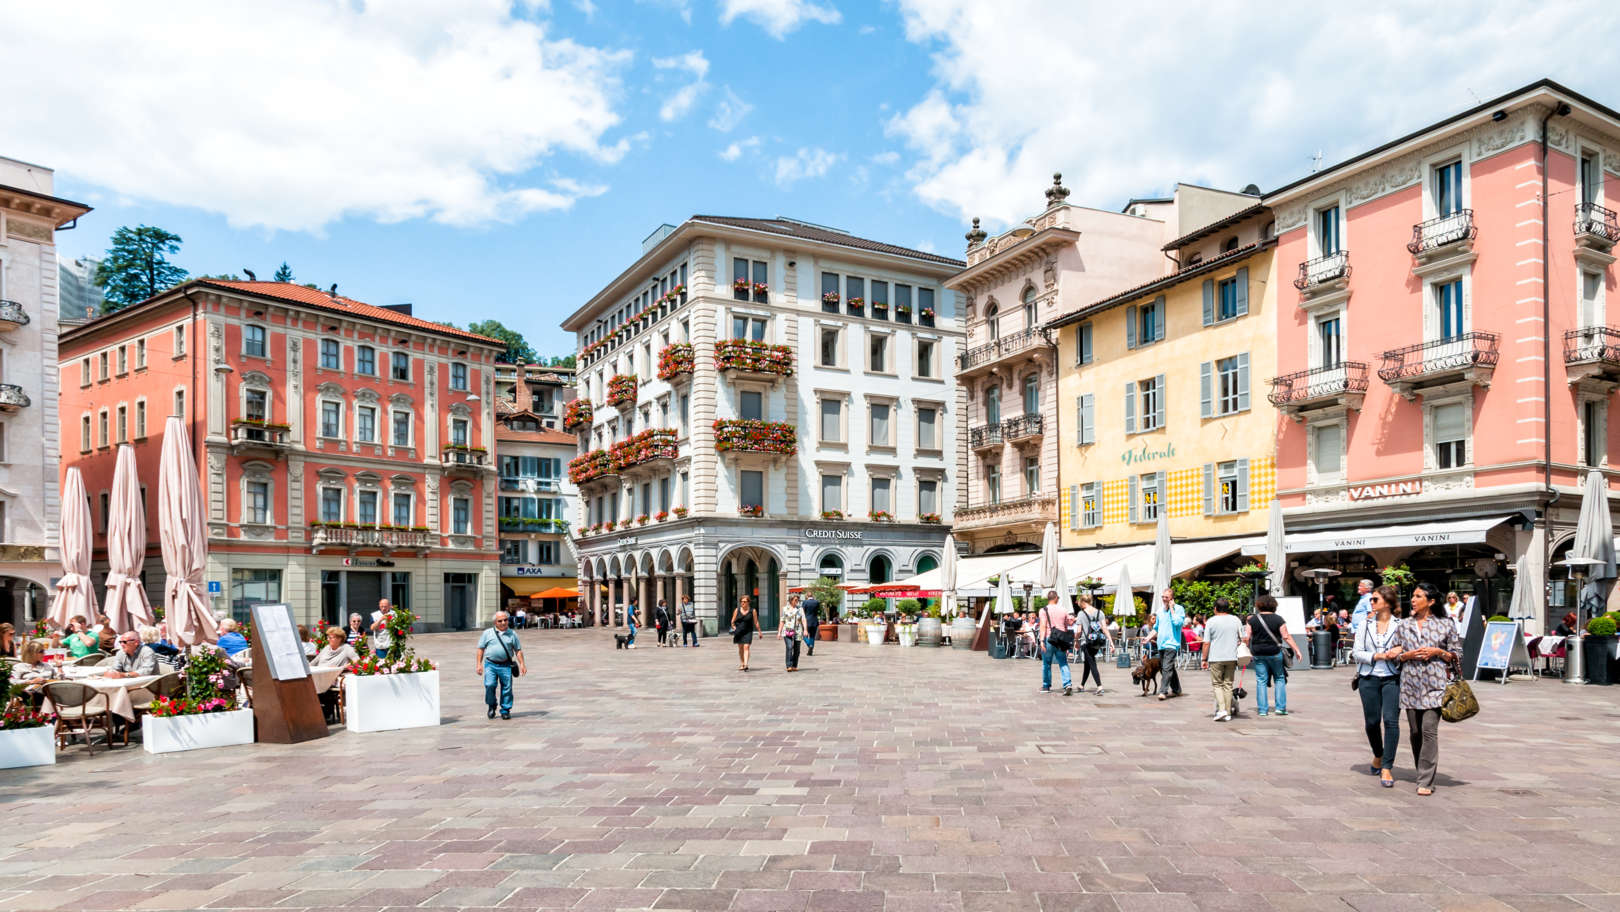 Lugano's historic centre & Piazza Riforma